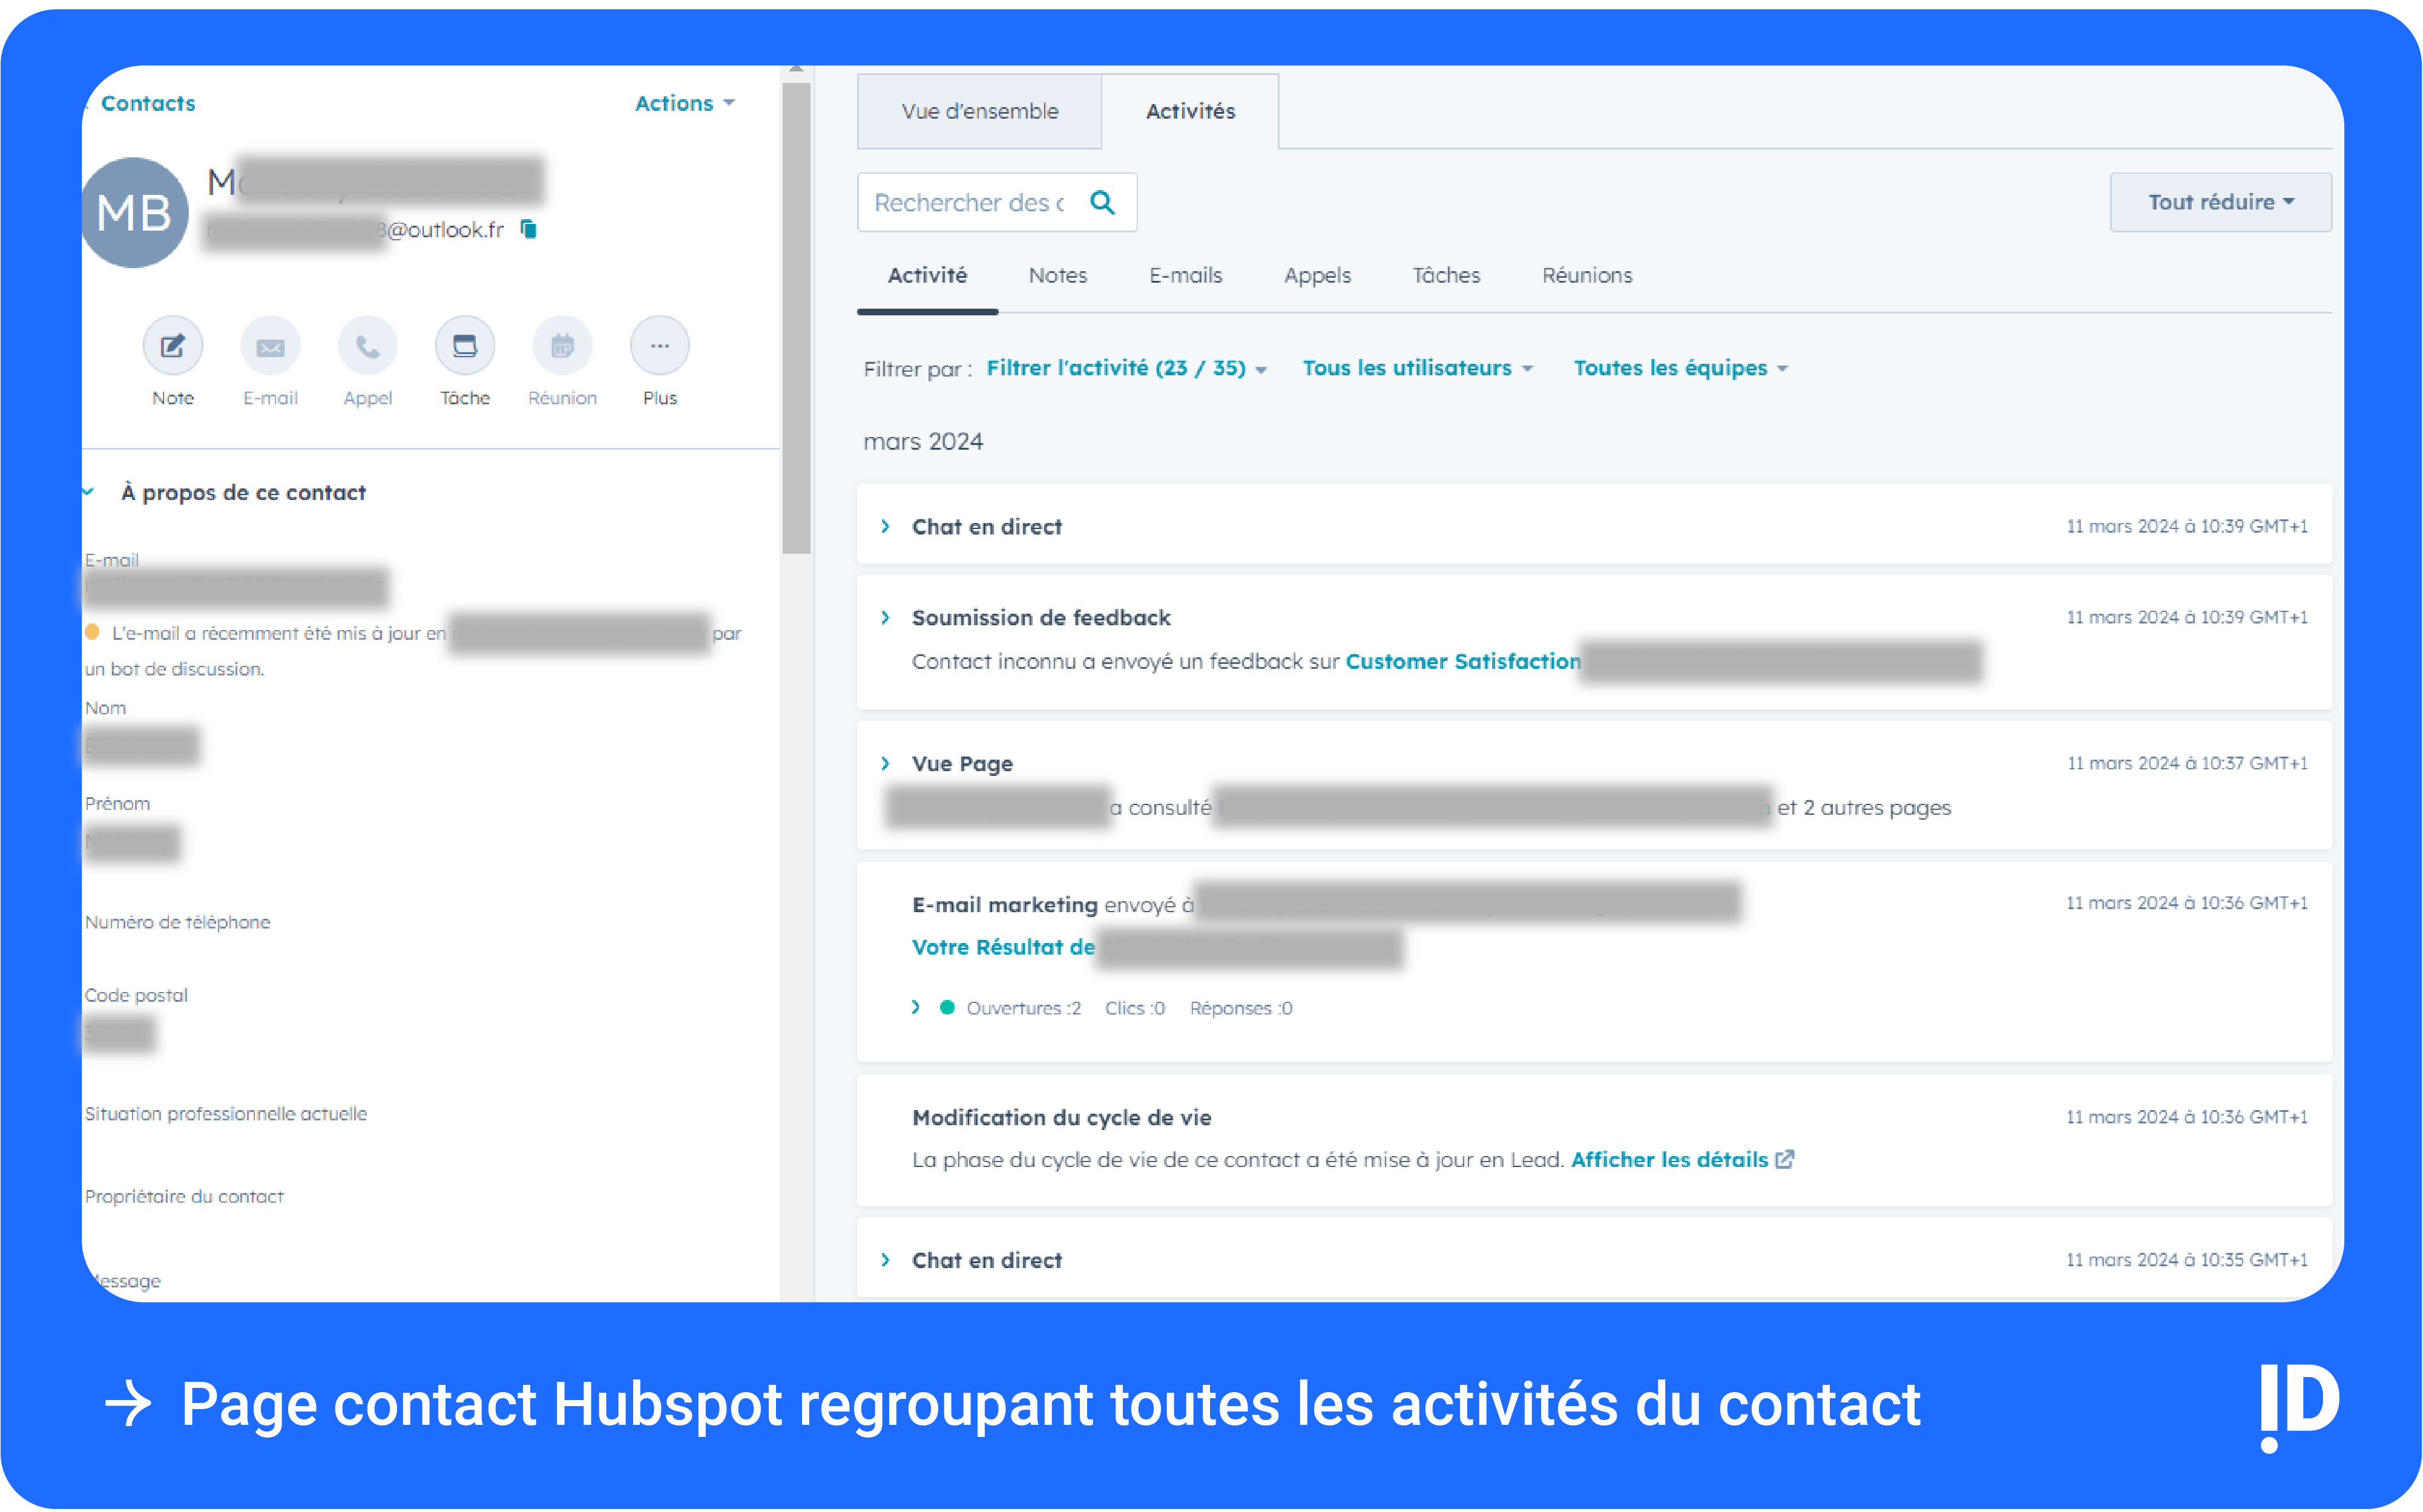 Page contact Hubspot regroupant toutes les activités du contact